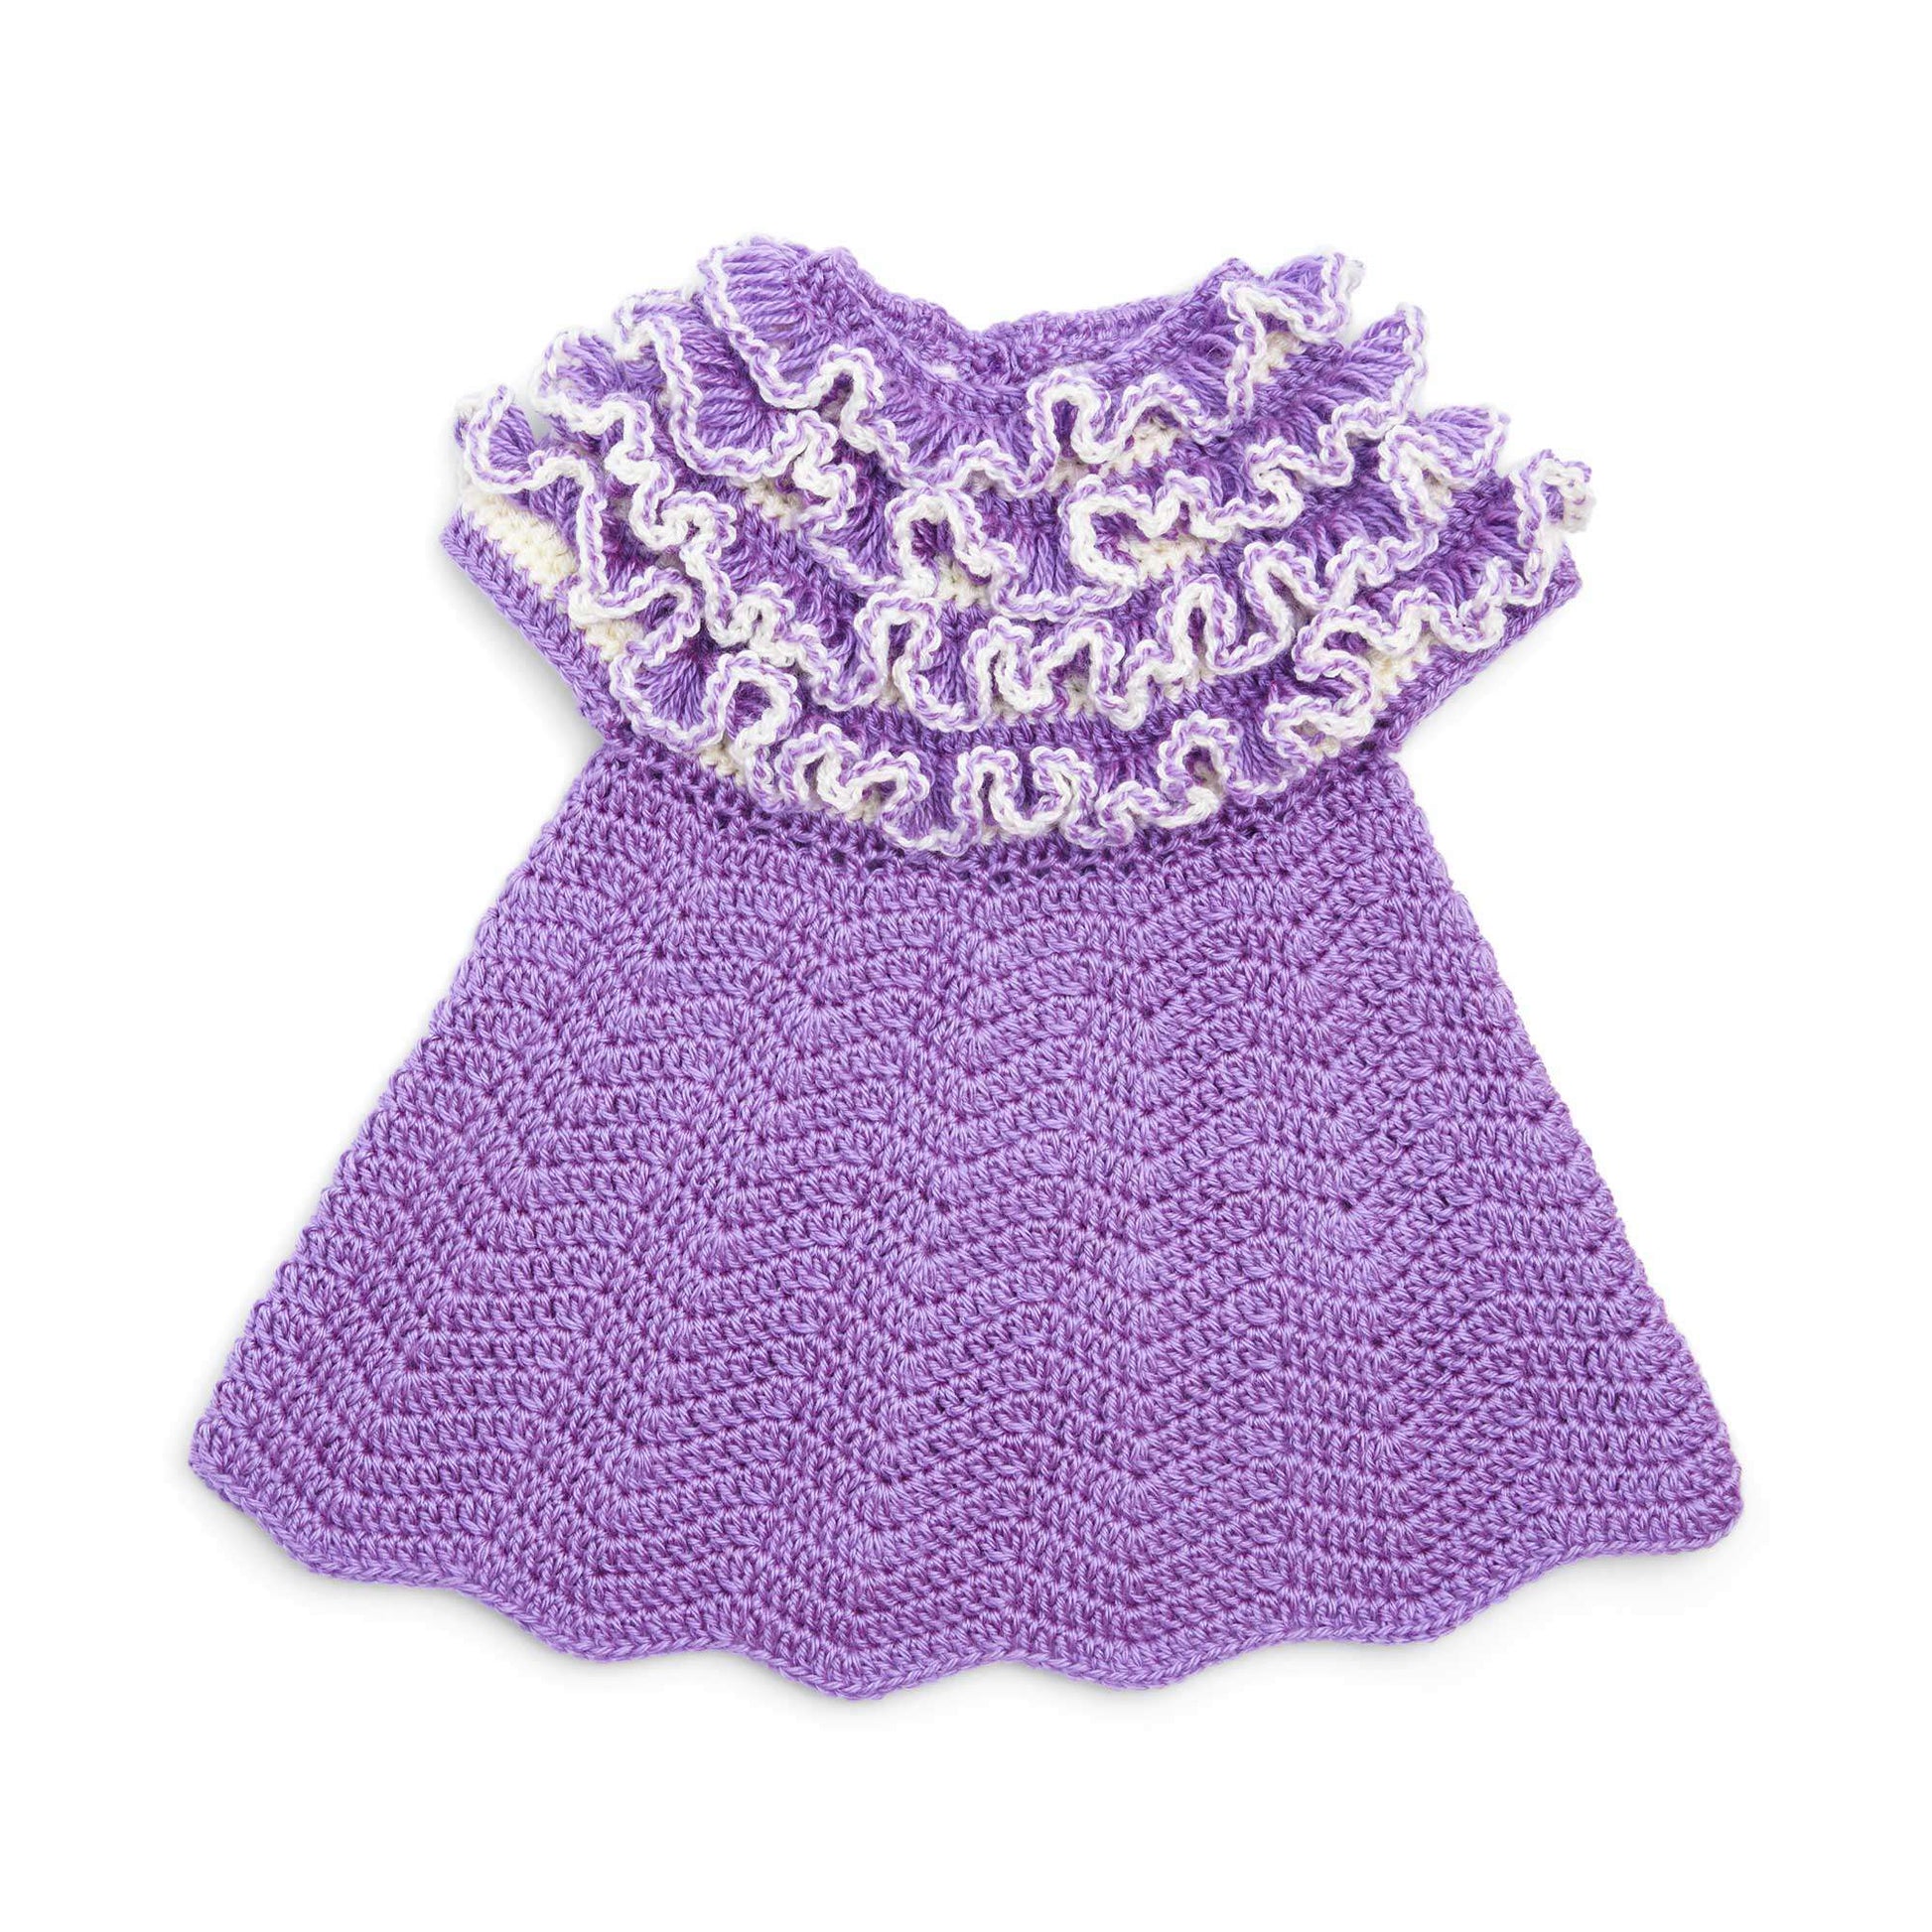 Bernat Crochet Ruffle Yoke Baby Dress 12 mos